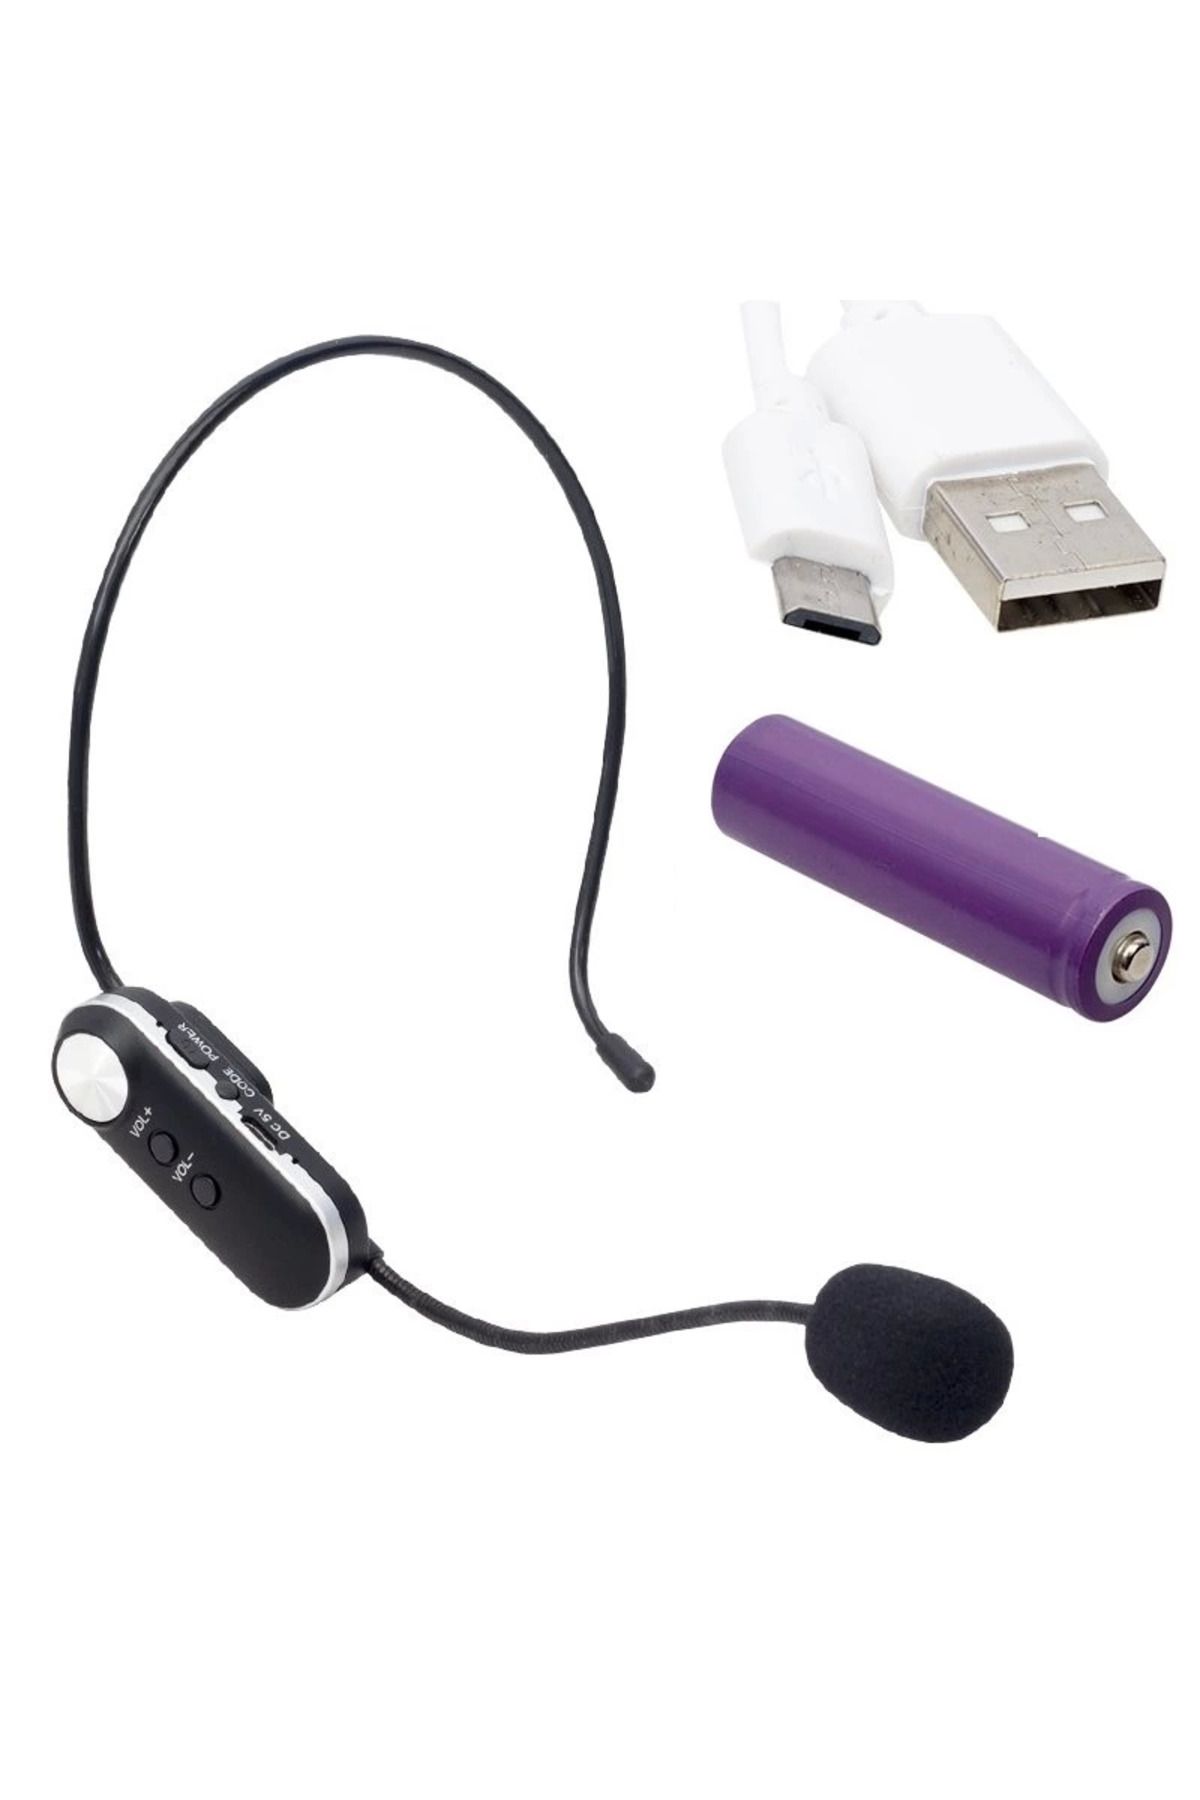 Genel Markalar Mv-1307hh Uhf 2 Headset Şarjlı Kablosuz Mikrofon (volume Kontrollü) alit